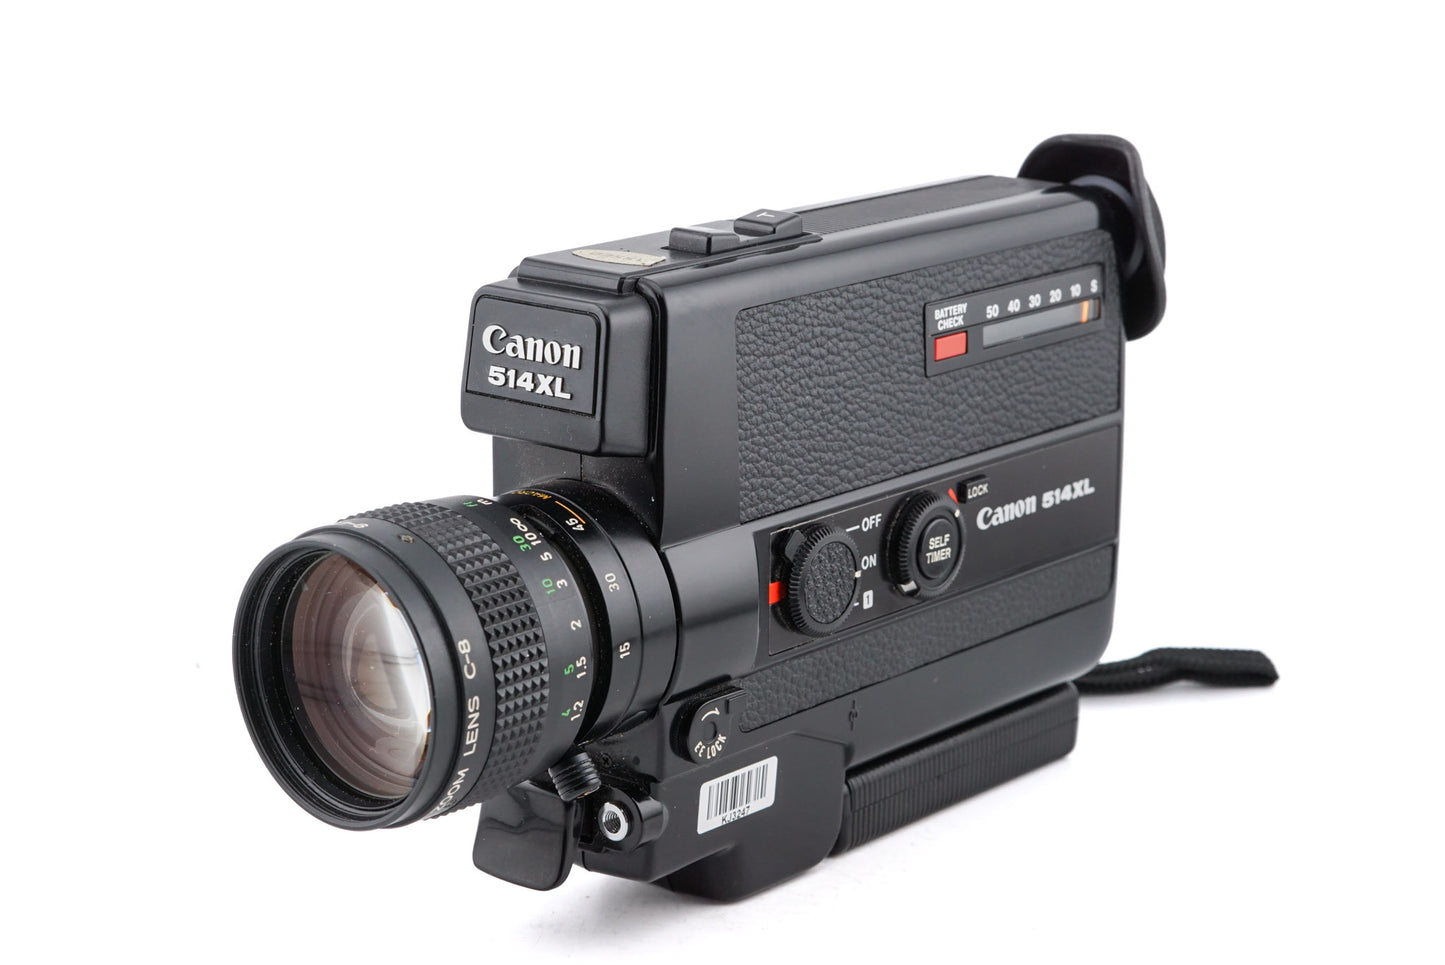 Canon 514XL